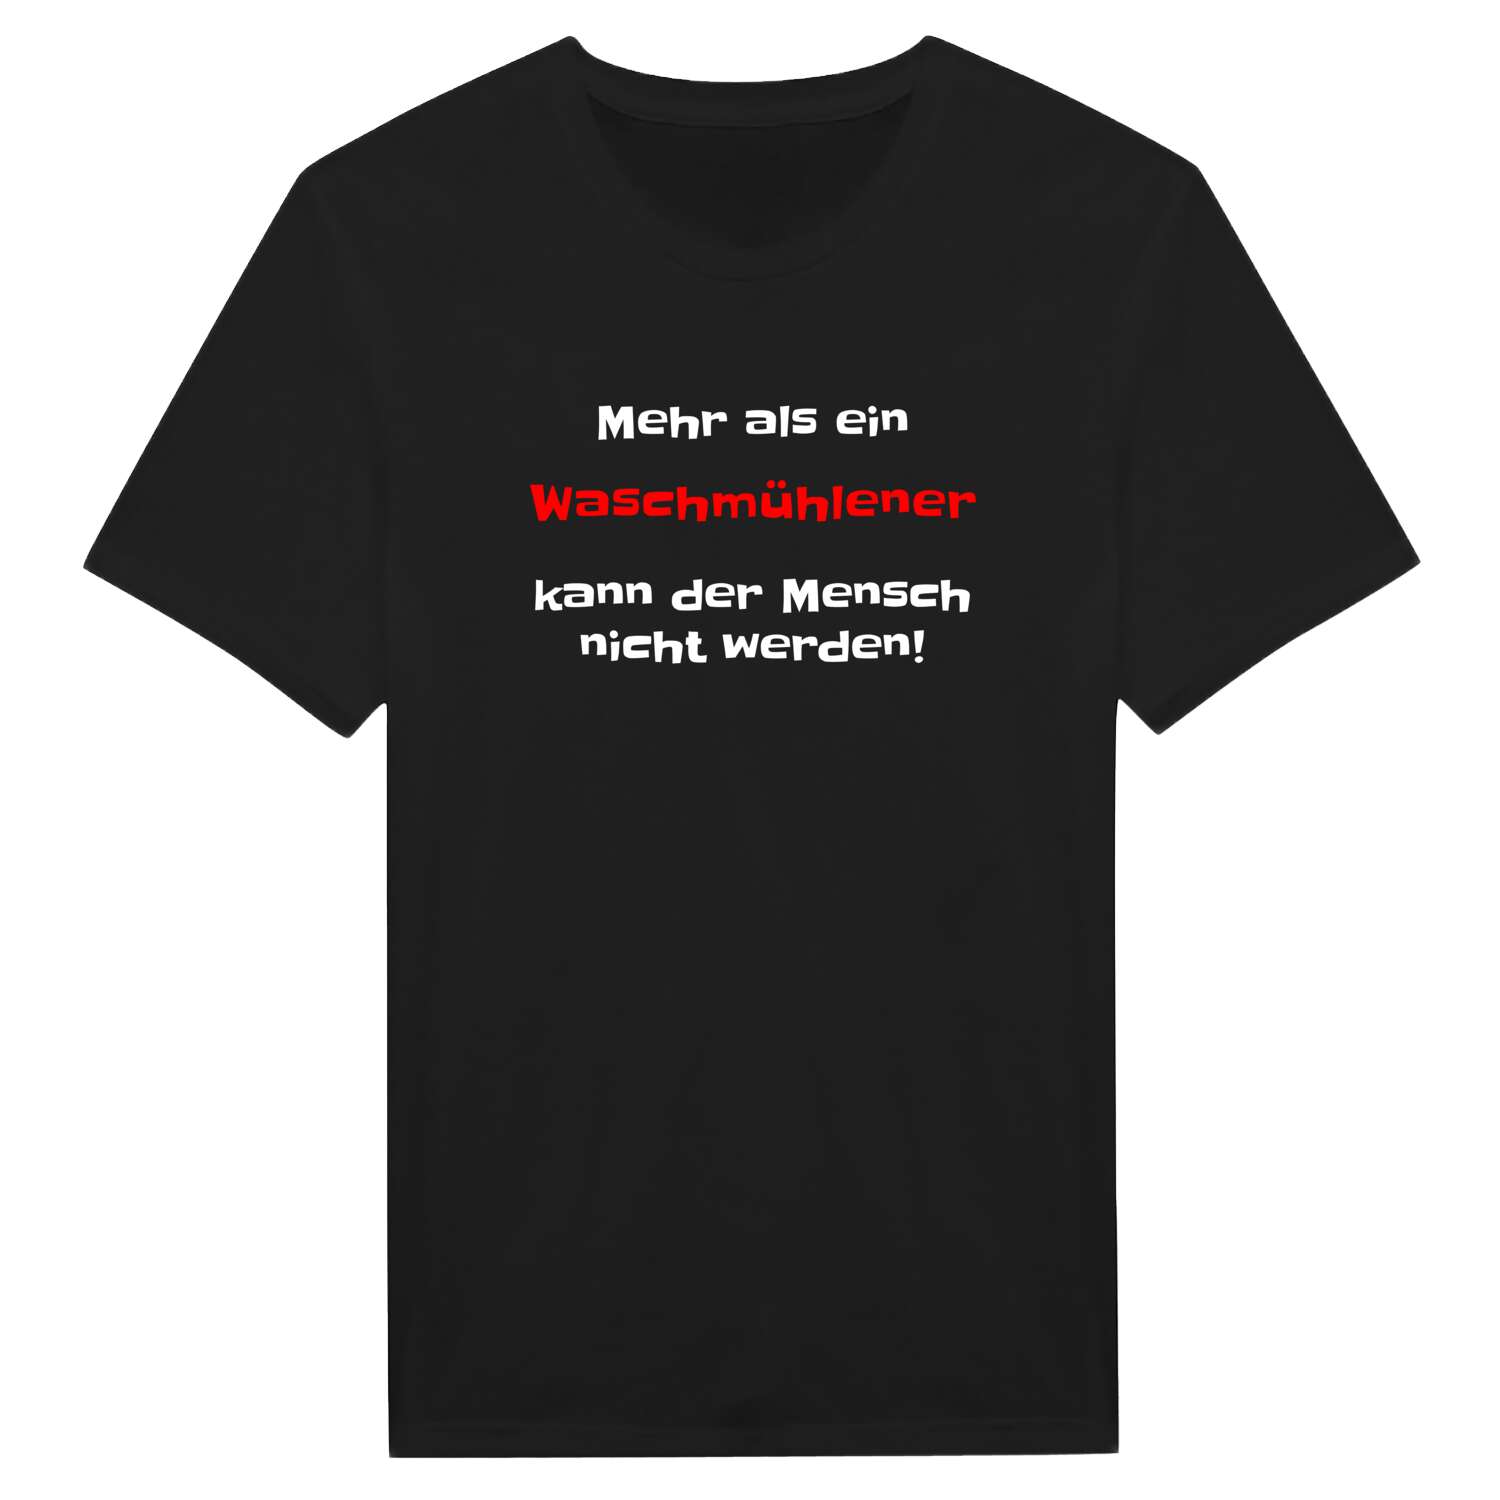 Waschmühle T-Shirt »Mehr als ein«